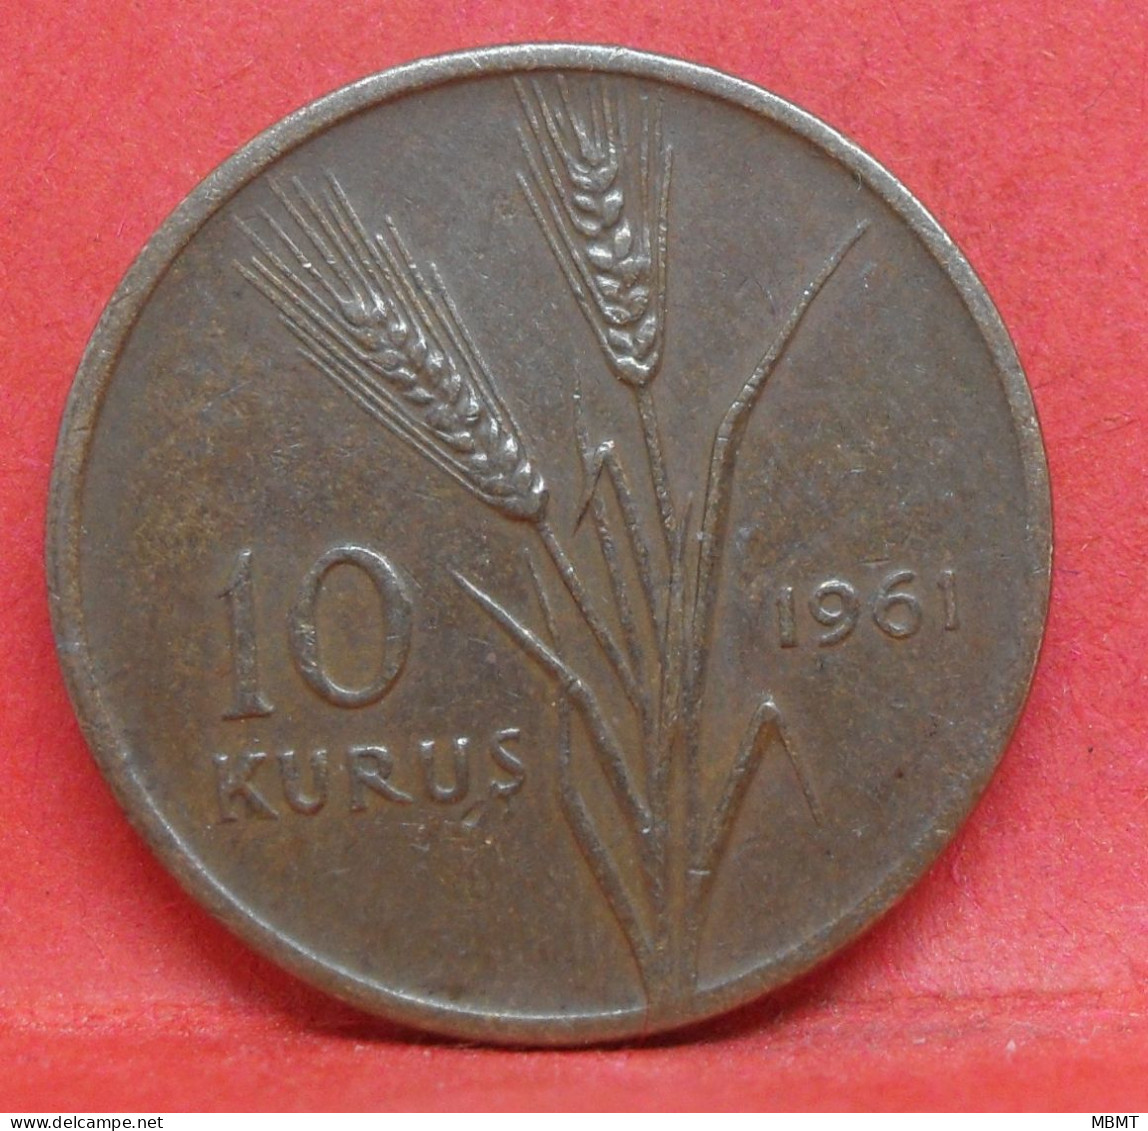 10 Kurus 1961 - TB - Pièce De Monnaie Turquie - Article N°4976 - Turquie